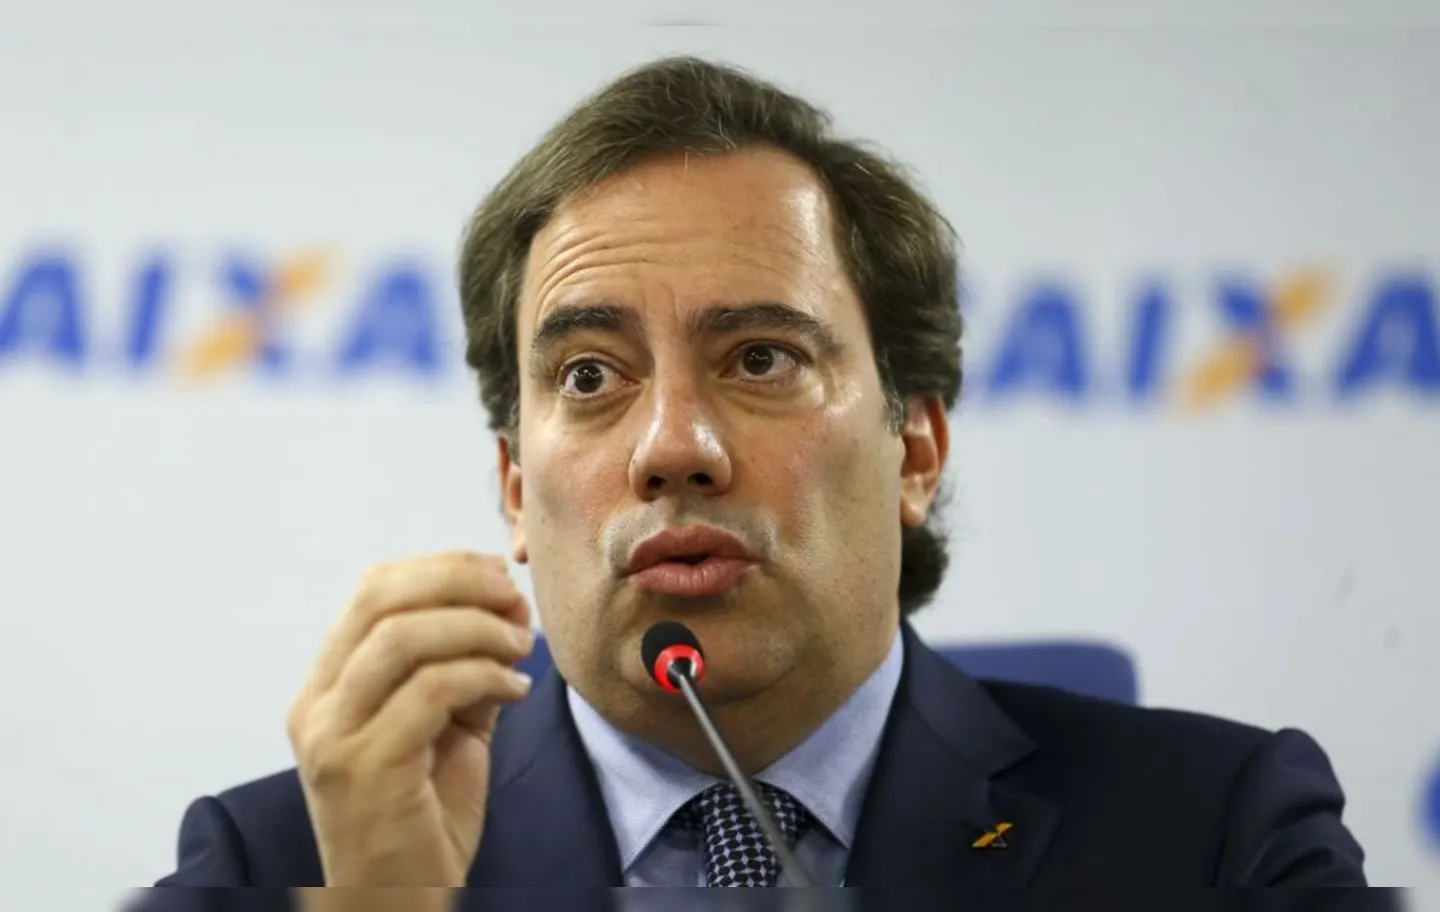 Pedro Guimarães, ex-presidente da Caixa, alvo de denúncias de assédio sexual e moral